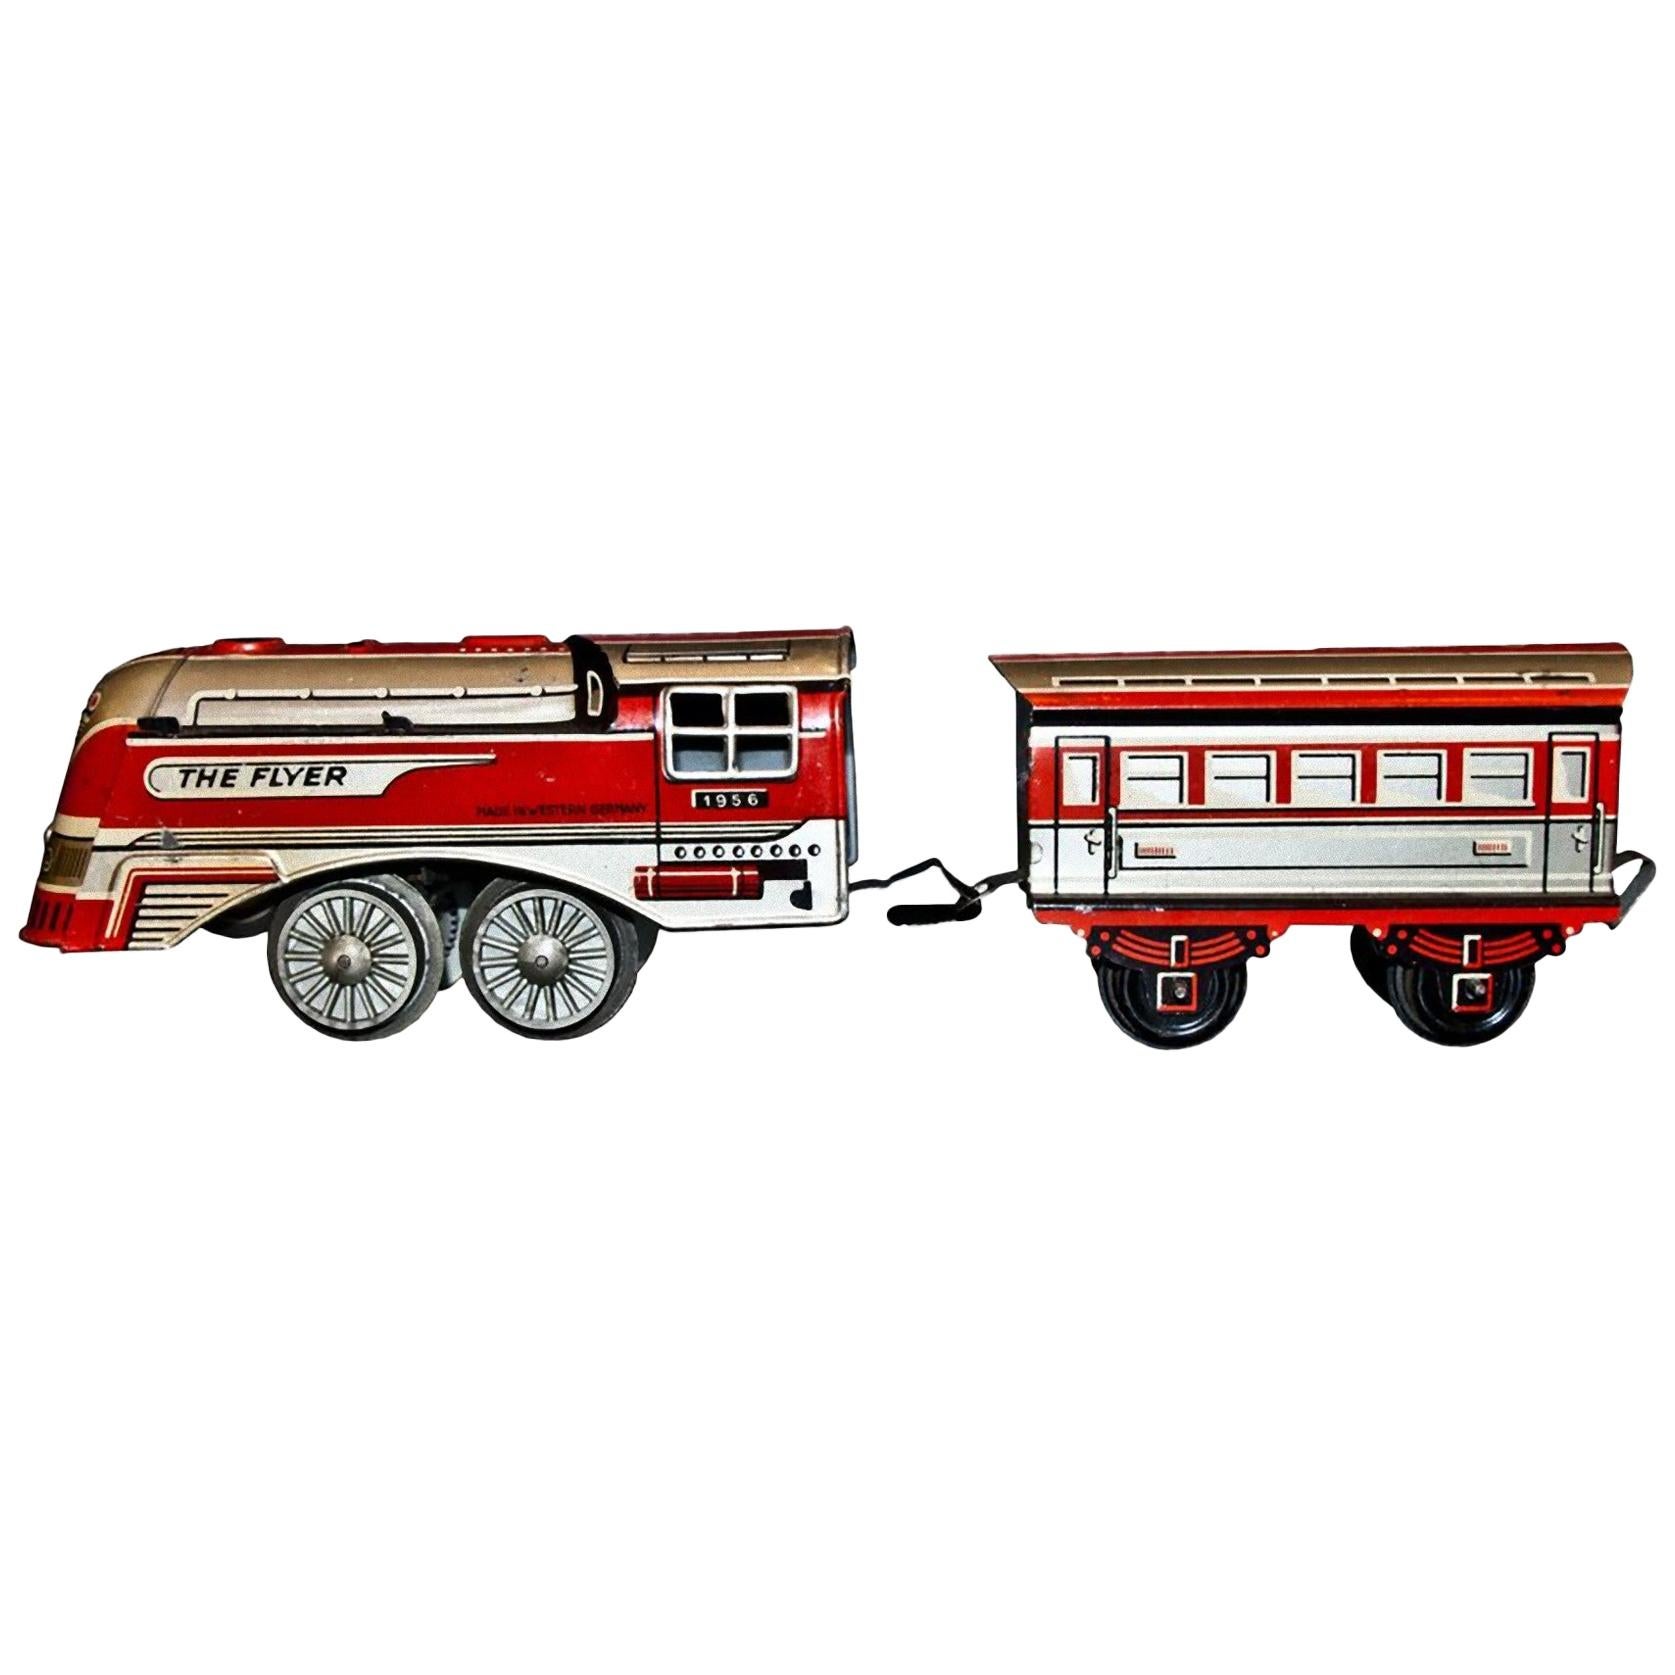 Vintage Toy:: The Flyer 1956 Lokomotive und Wagen:: 1956